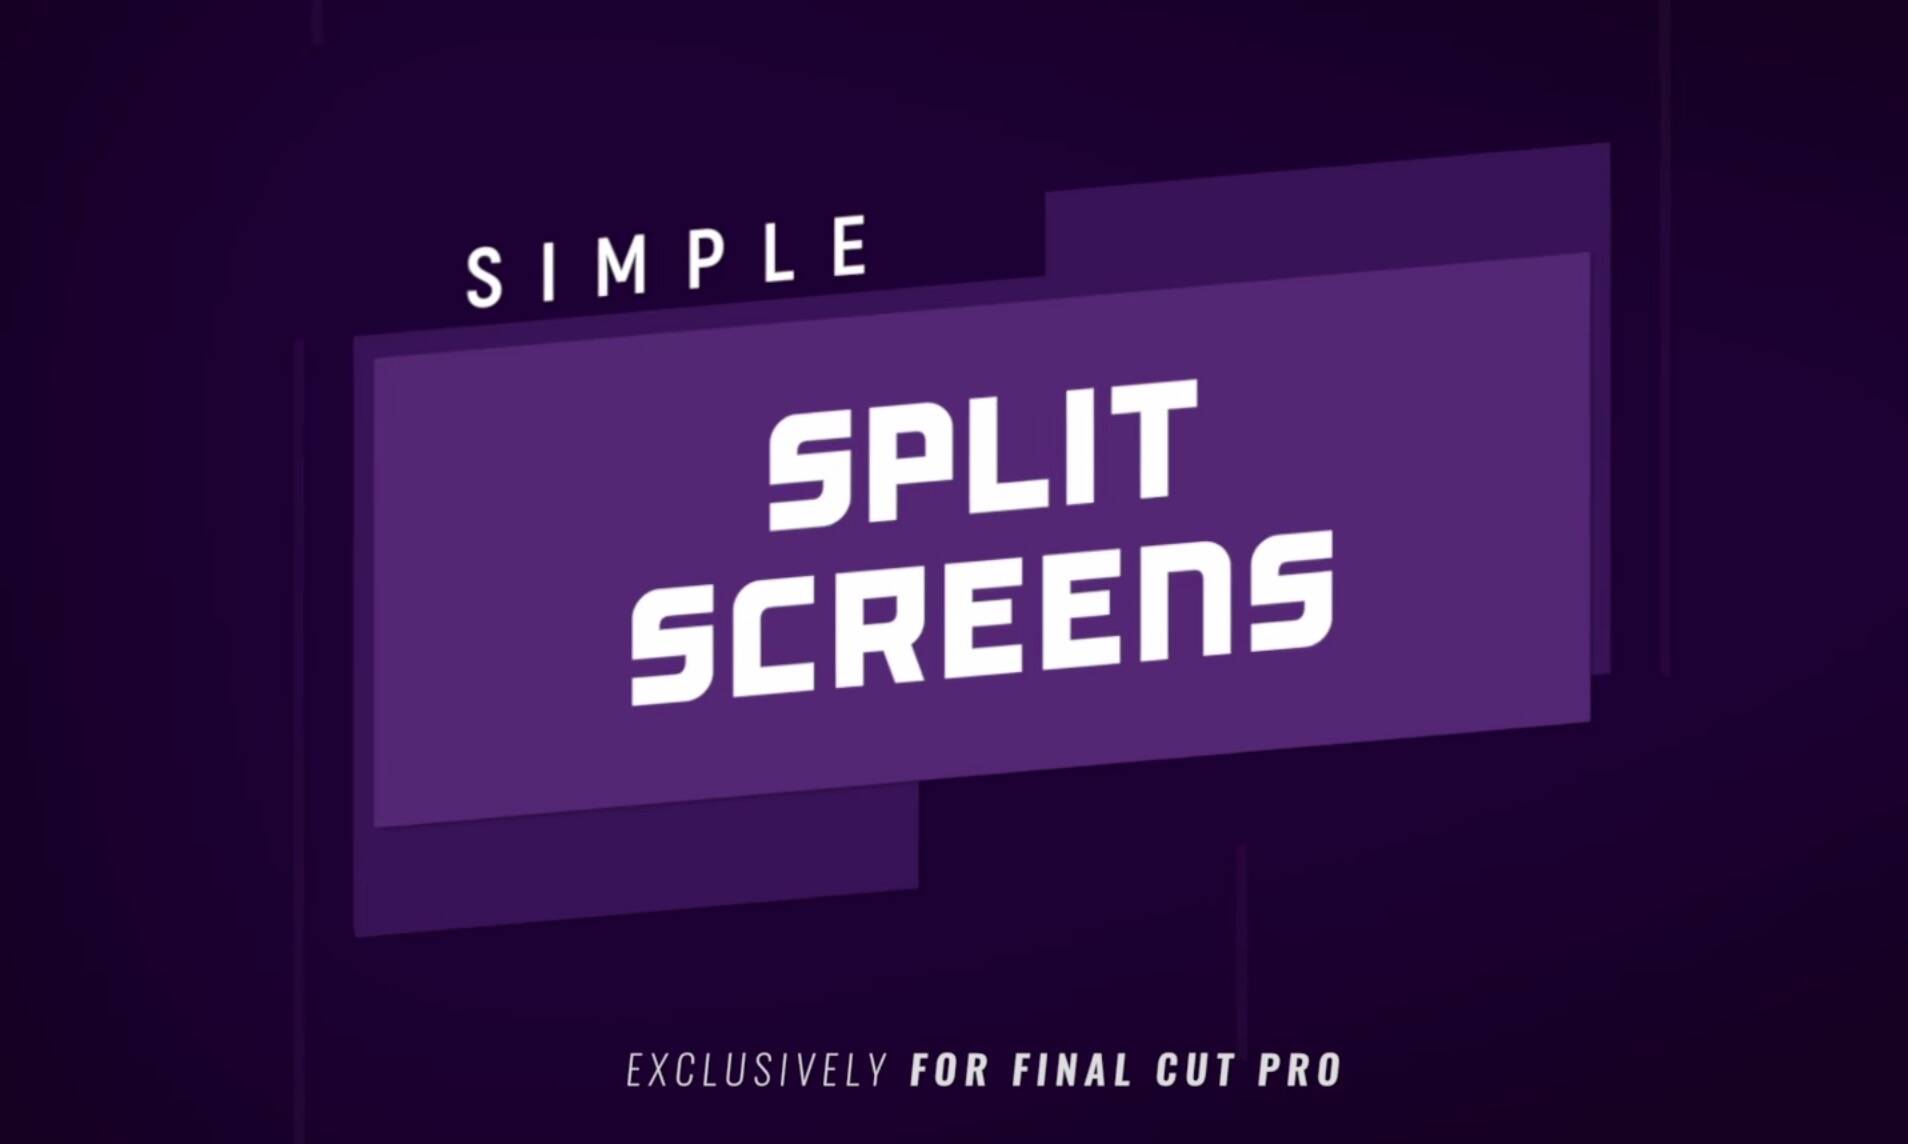 FCPX插件:25组动态分屏样式屏幕分割动画Simple Split Screens